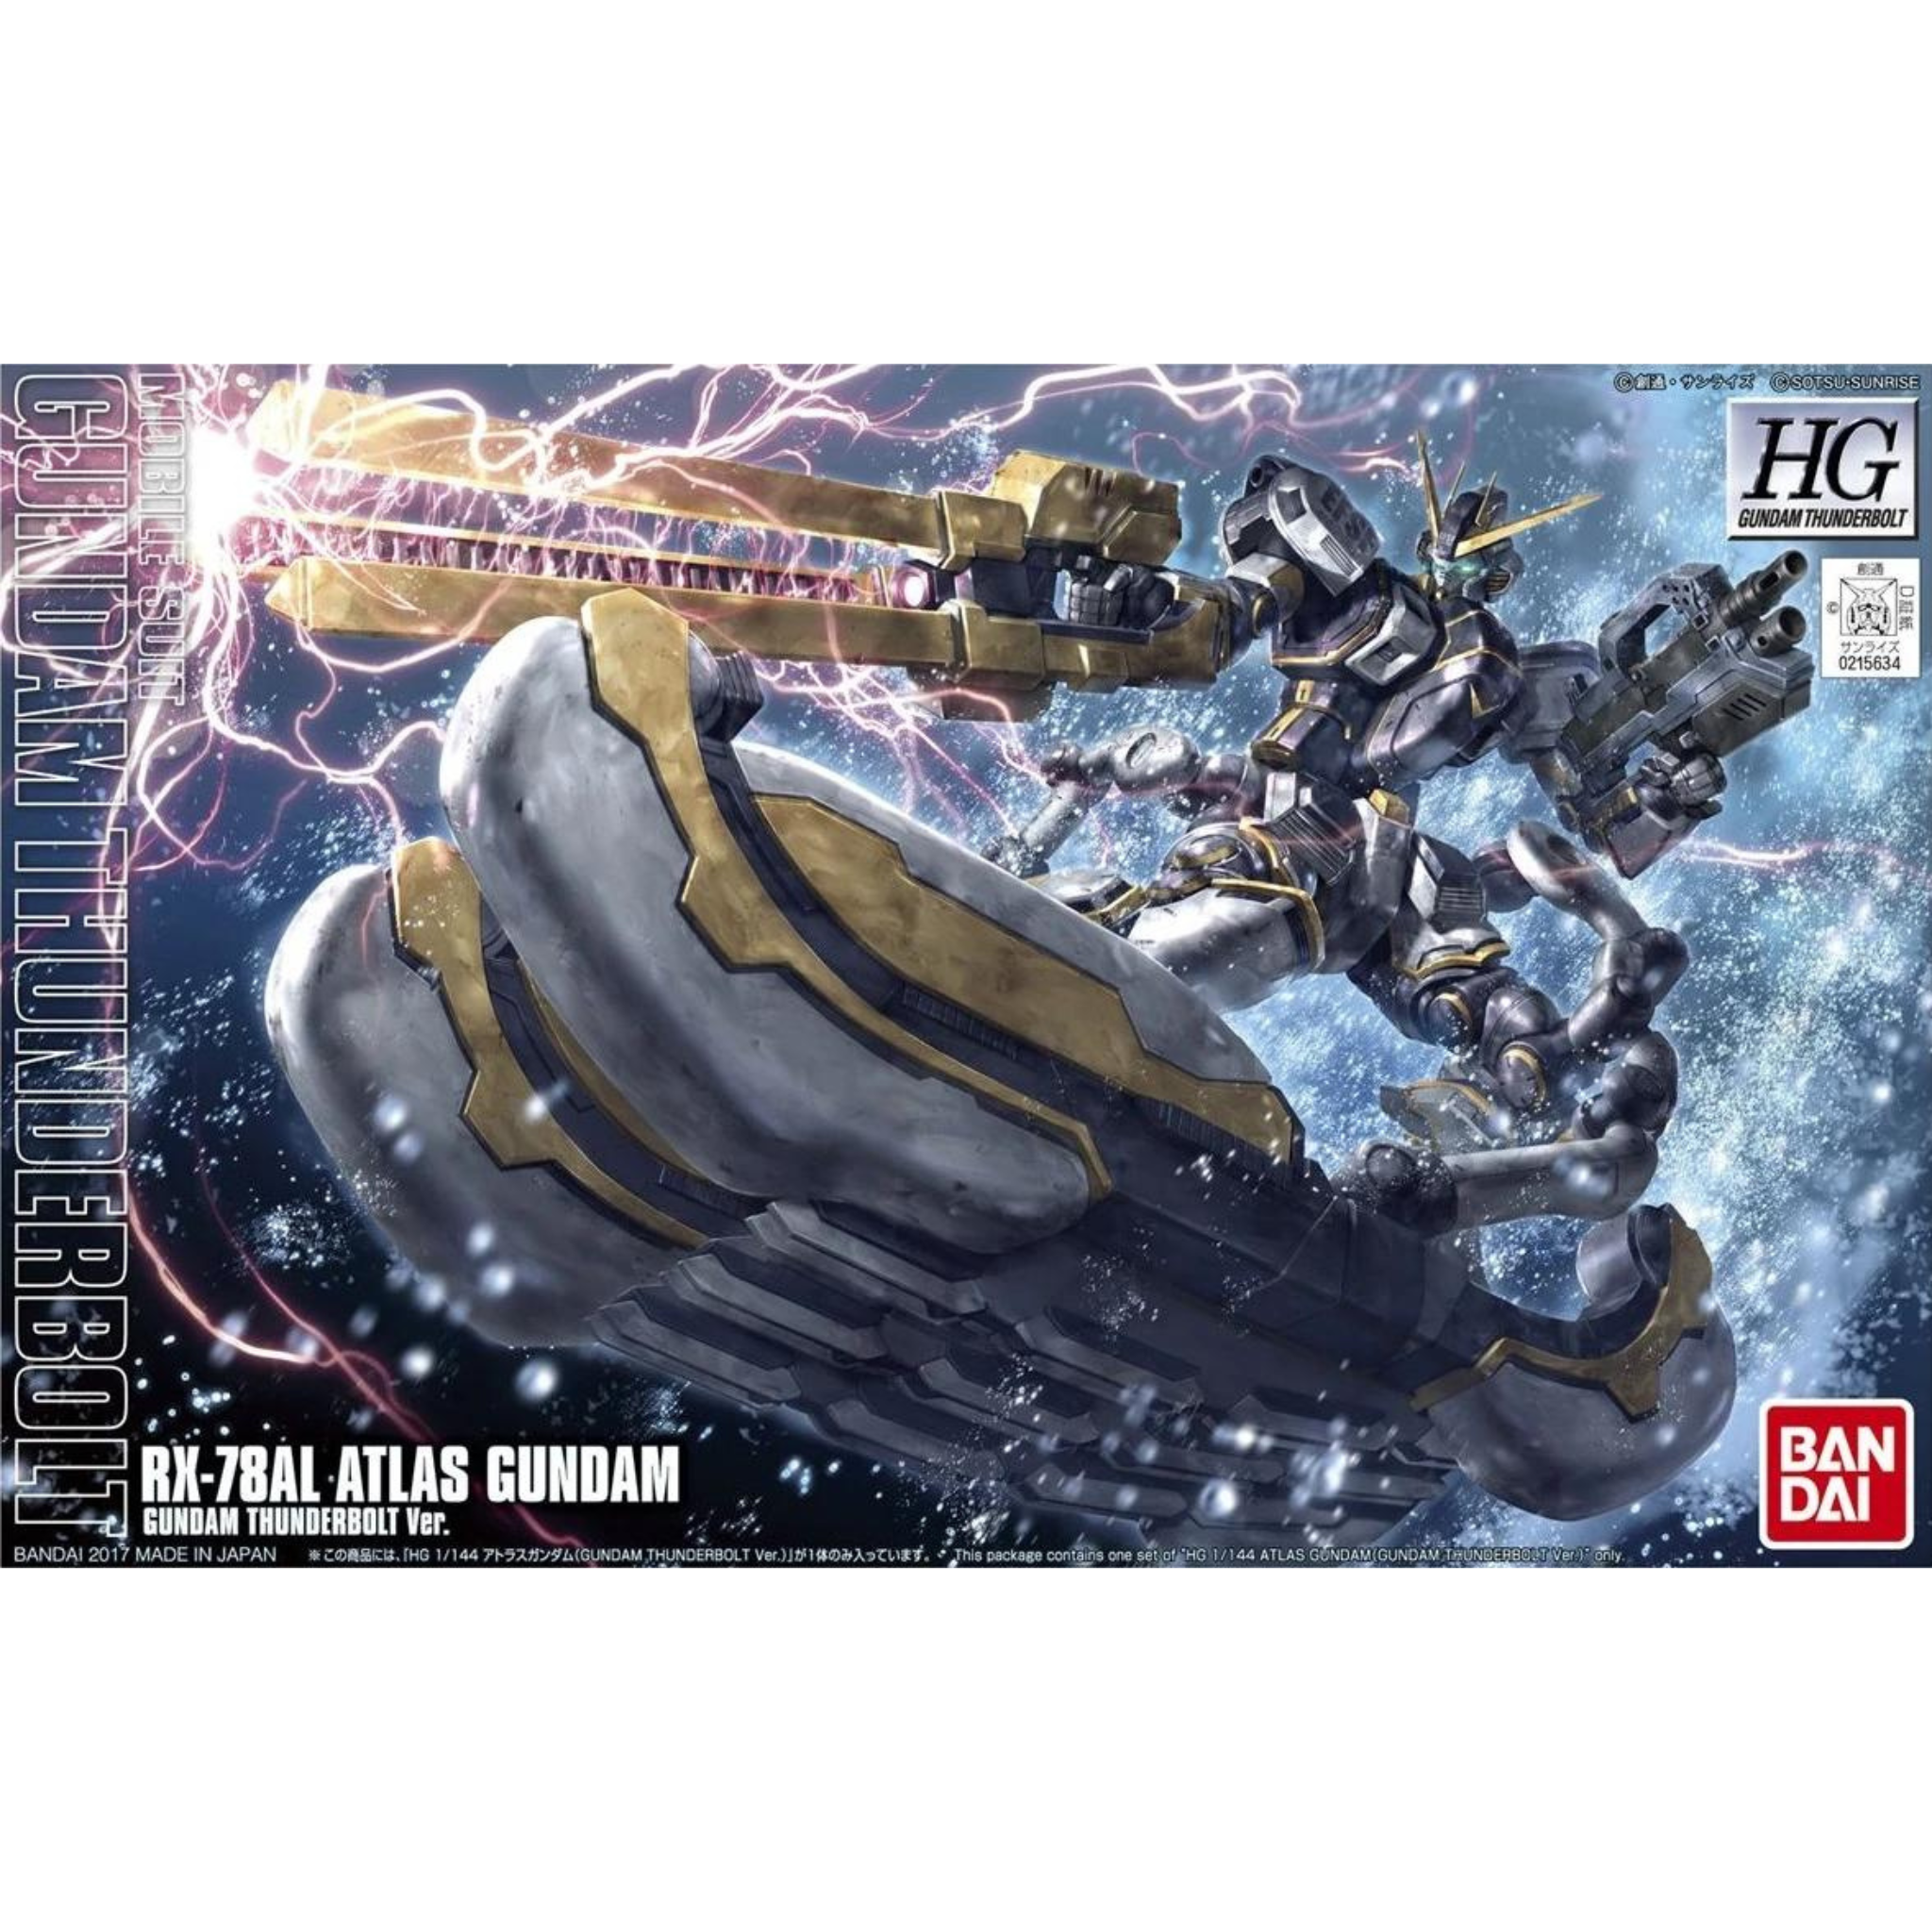 HG 1/144 Thunderbolt #12 RX-78AL Atlas Gundam #5063139 by Bandai